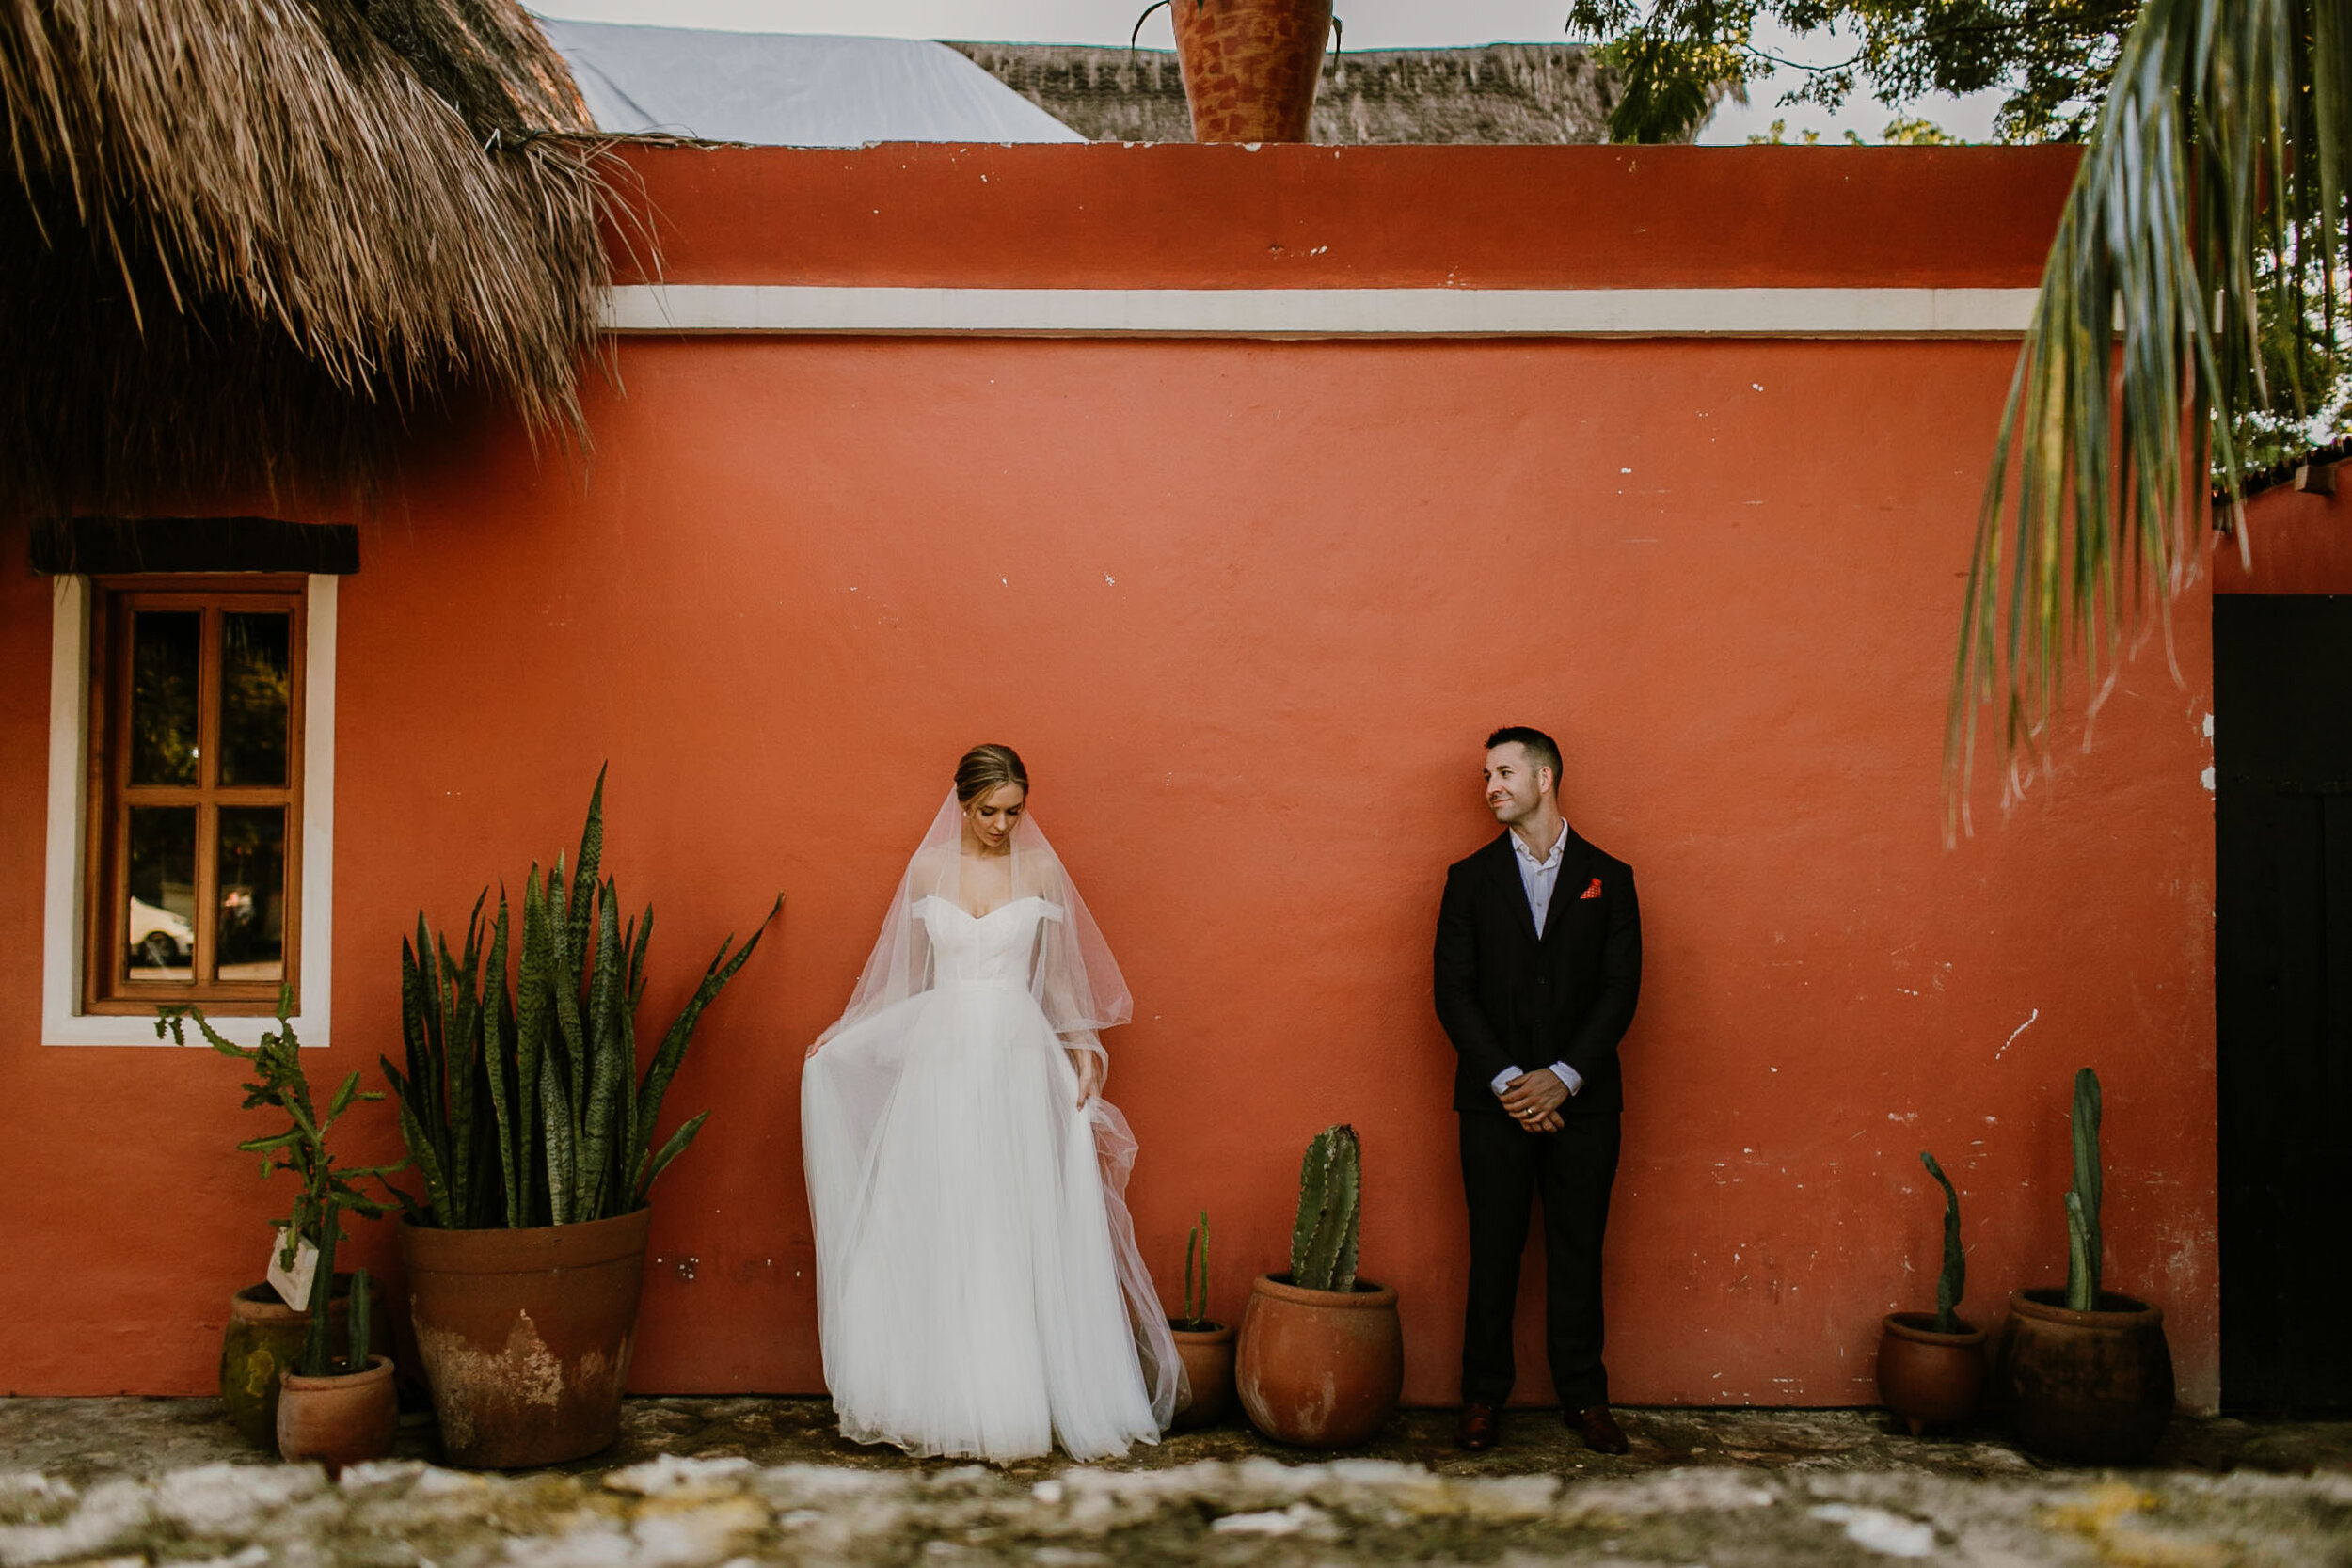 Tulum wedding photography at Coco Hacienda in Mexico